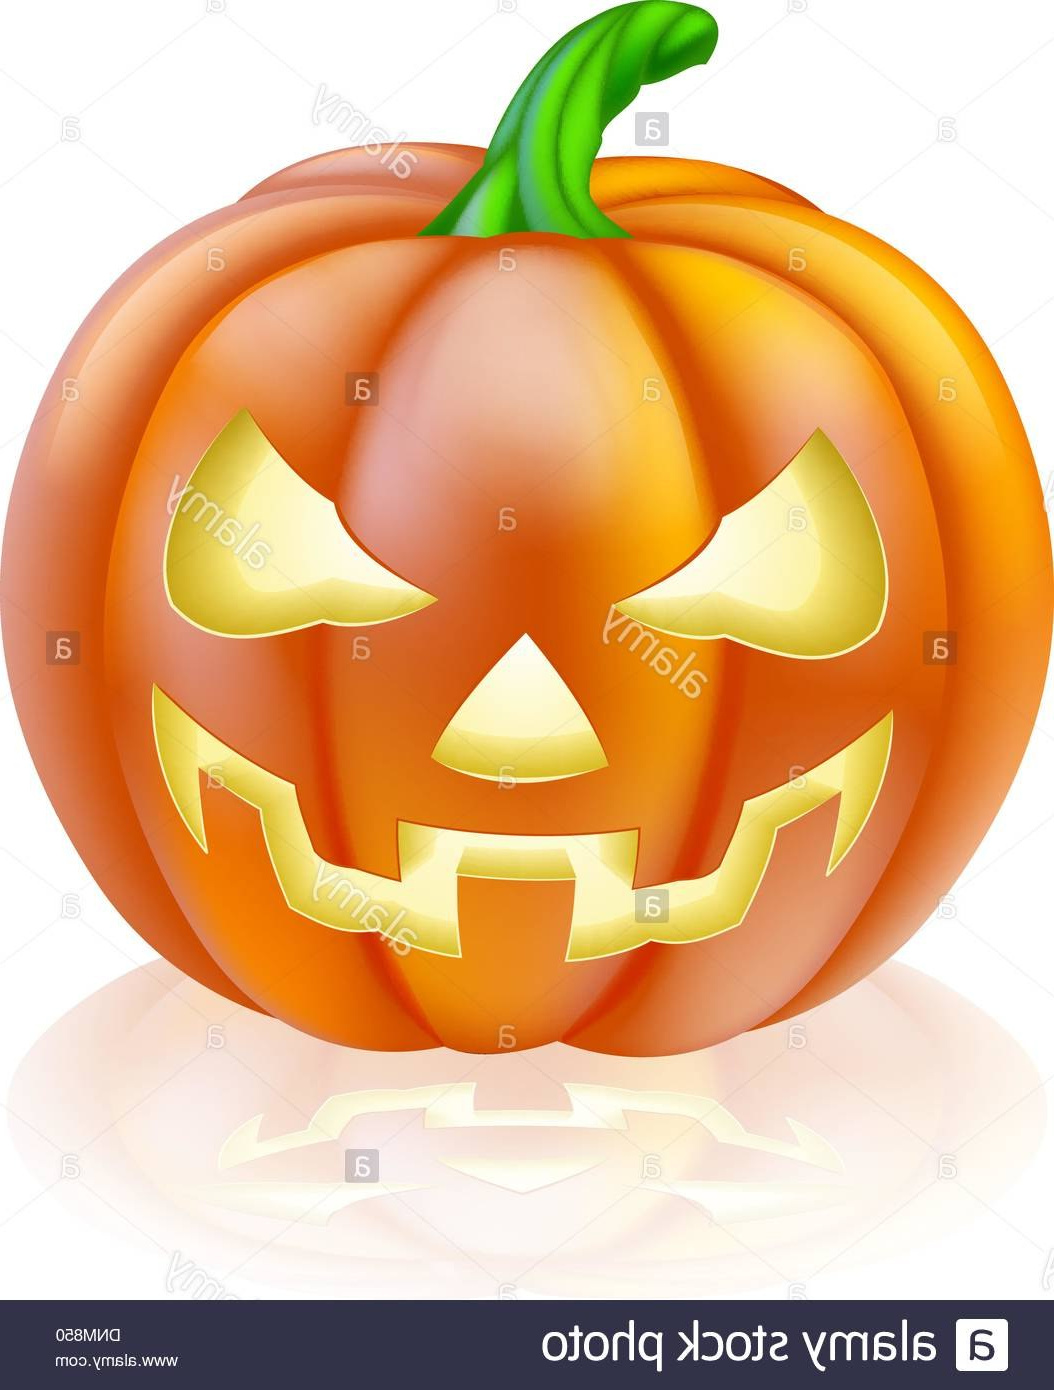 Coloriage D&amp;#039;halloween A Imprimer Élégant Image Ment Dessiner Une Citrouille D Halloween En Ligne